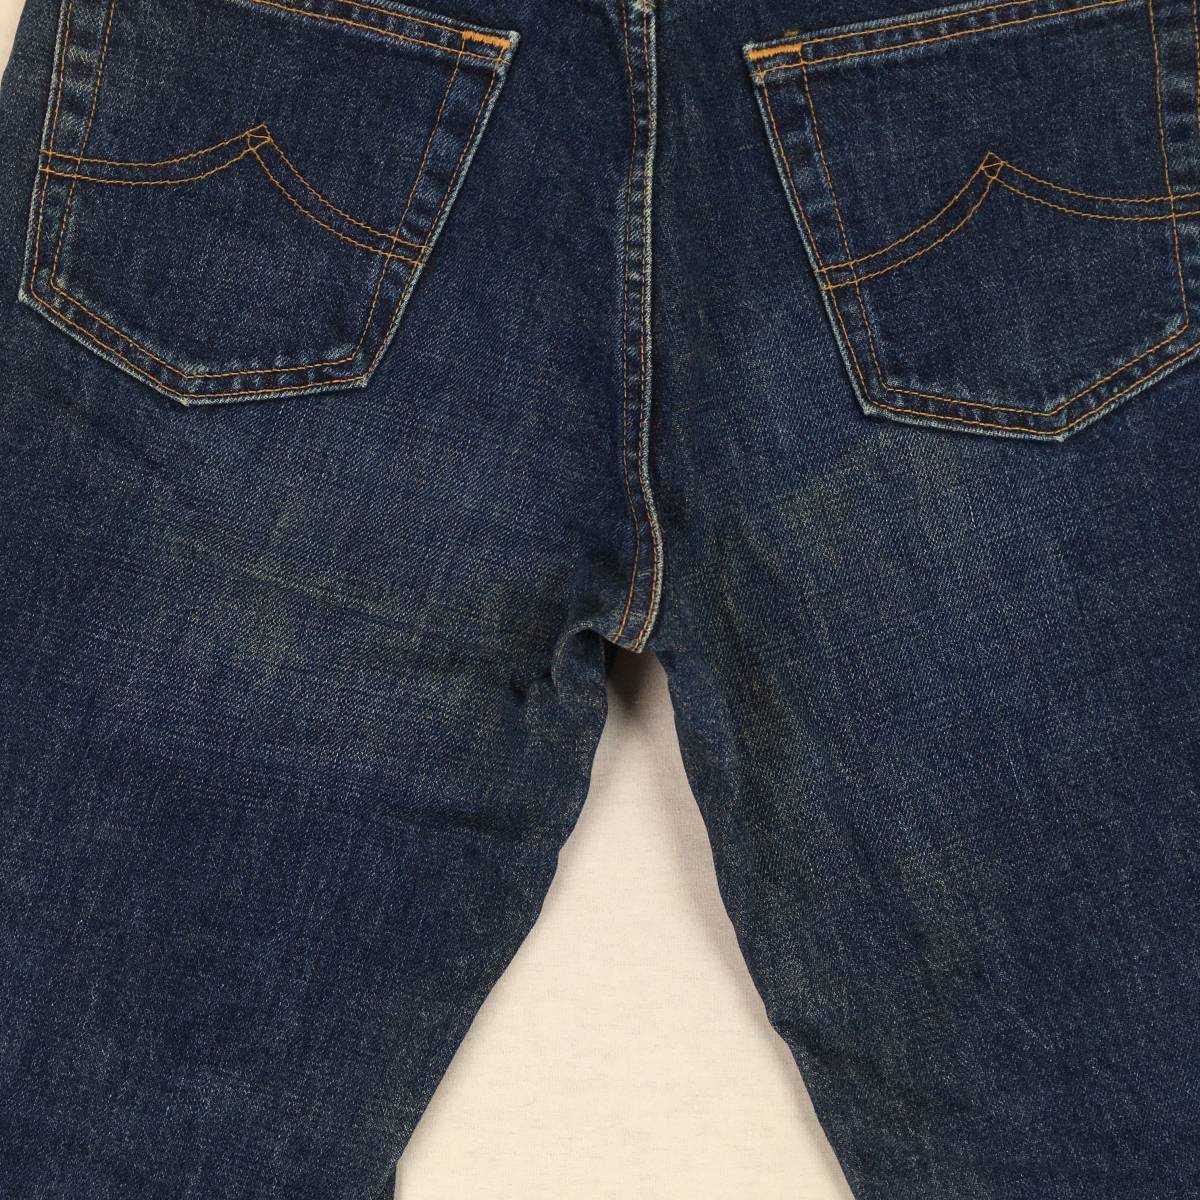 BOBSON Bobson 530 сделано в Японии ботинки cut Denim джинсы W29 L34 бумага patch Zip fly 